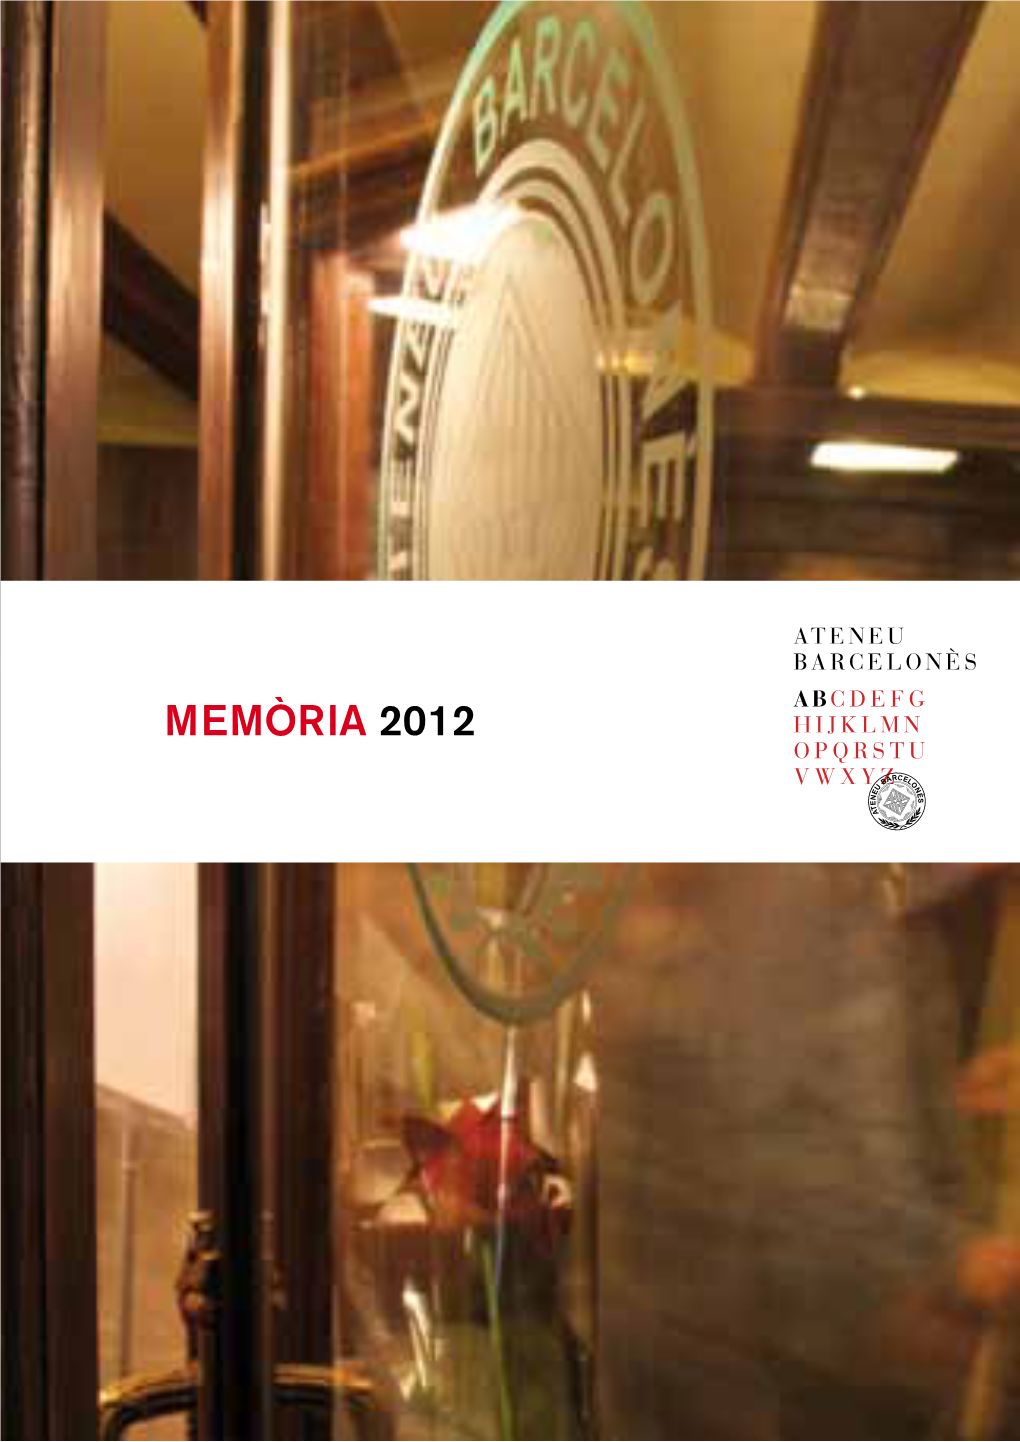 Memòria 2012 Edició: Ateneu Barcelonès, Març 2013